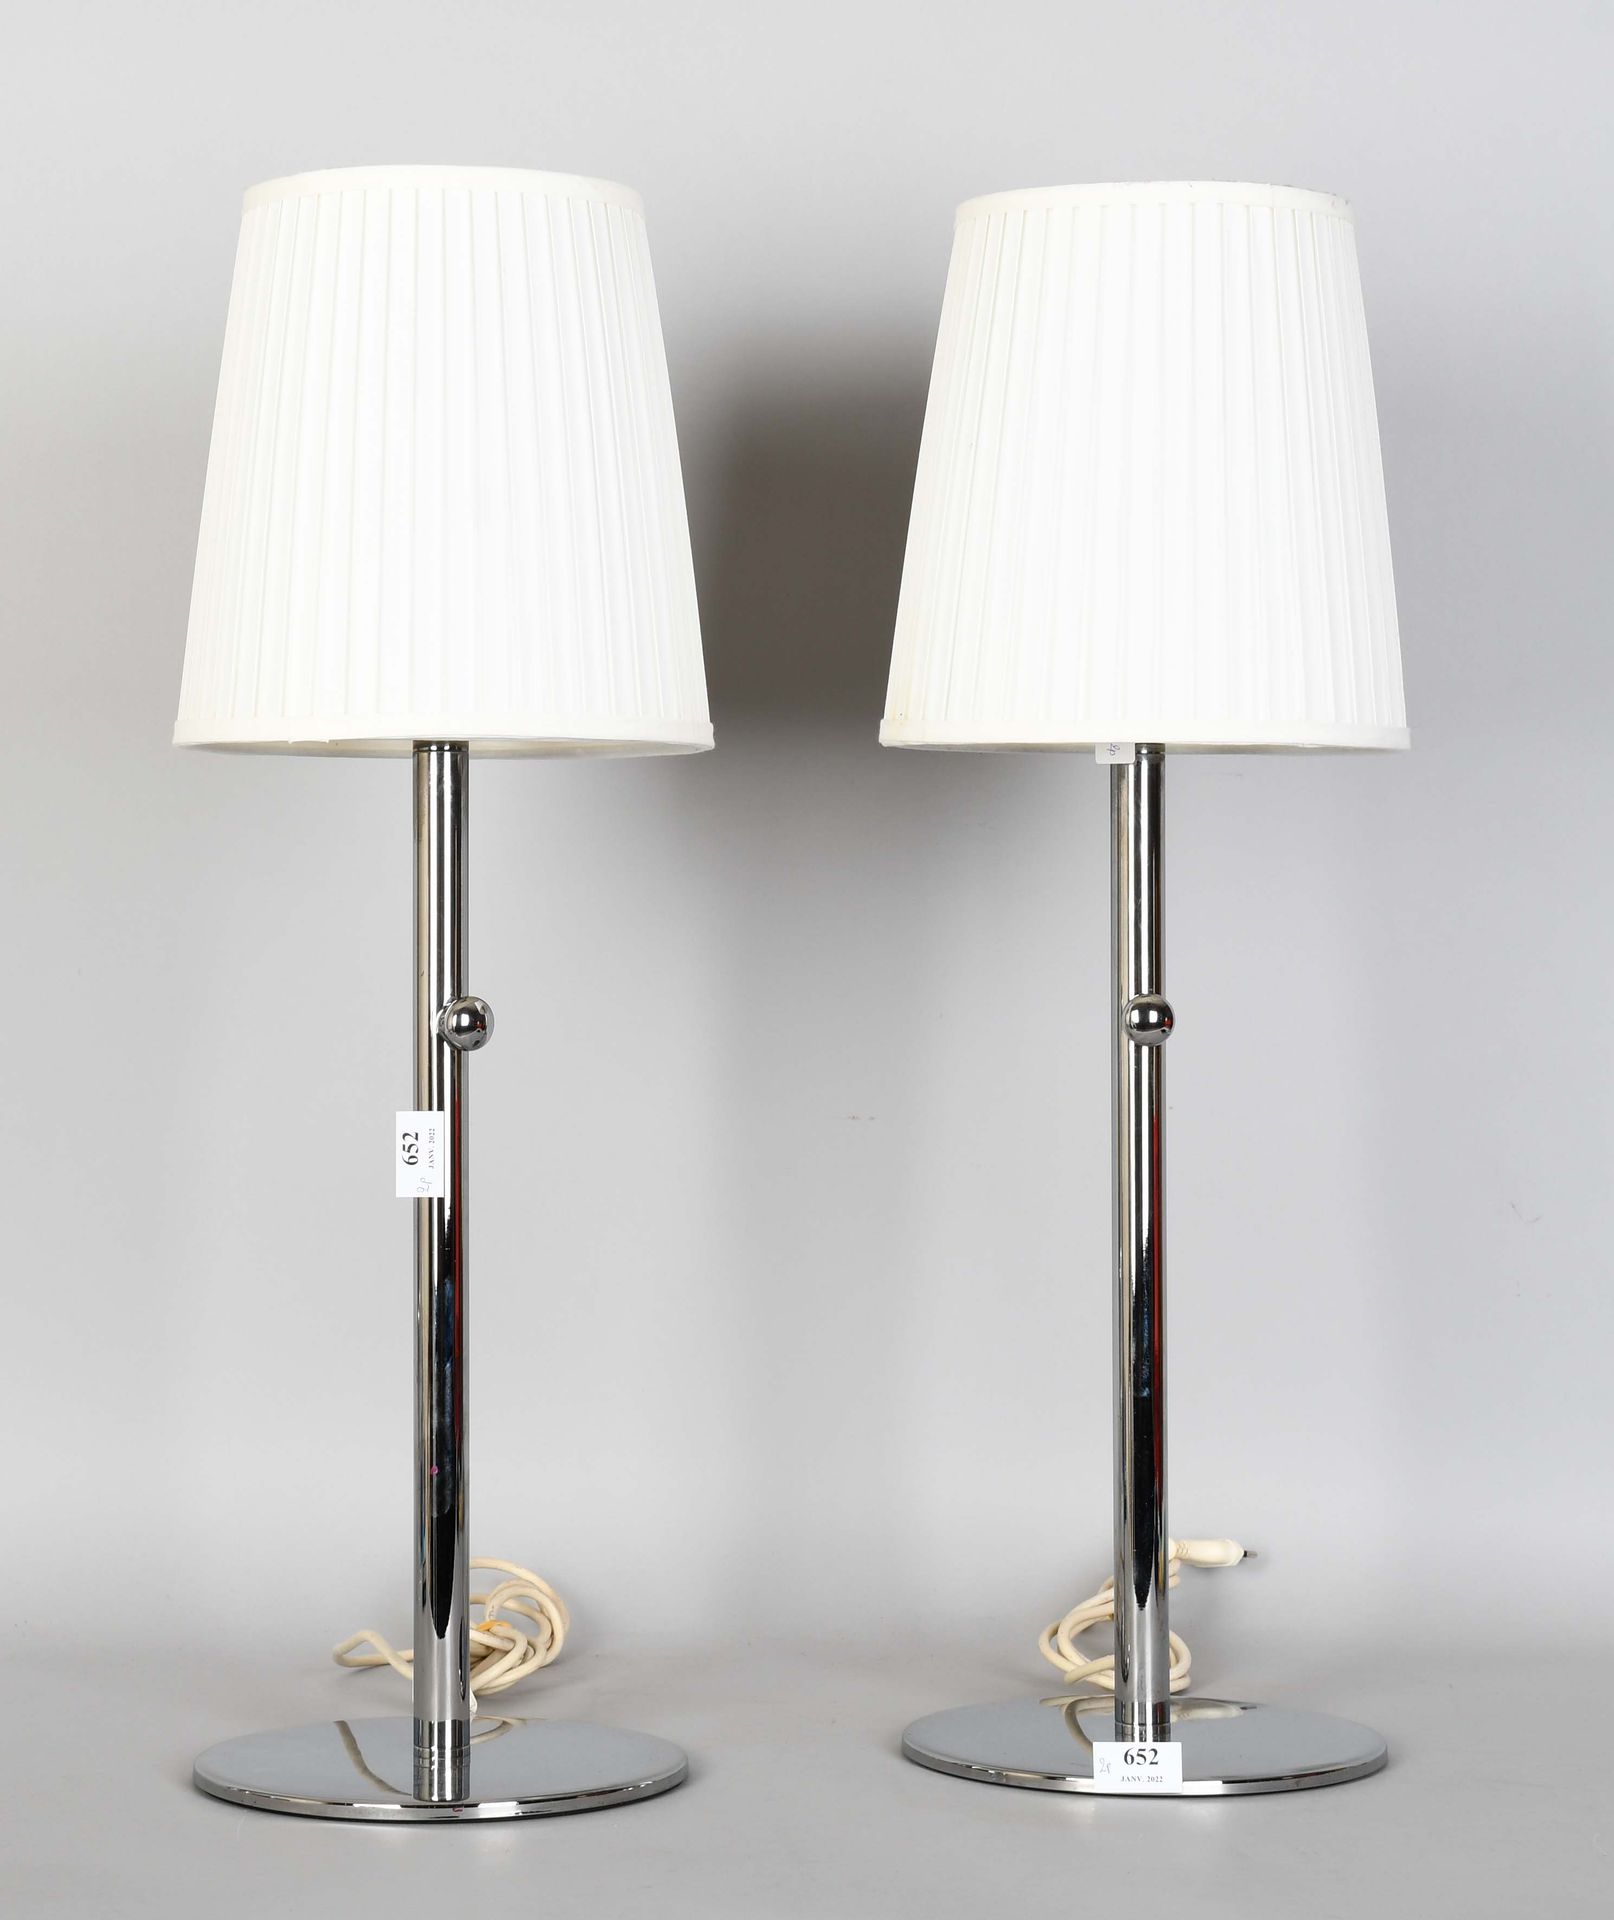 Null Par de lámparas de cabecera cromadas

Altura: 70 cm.